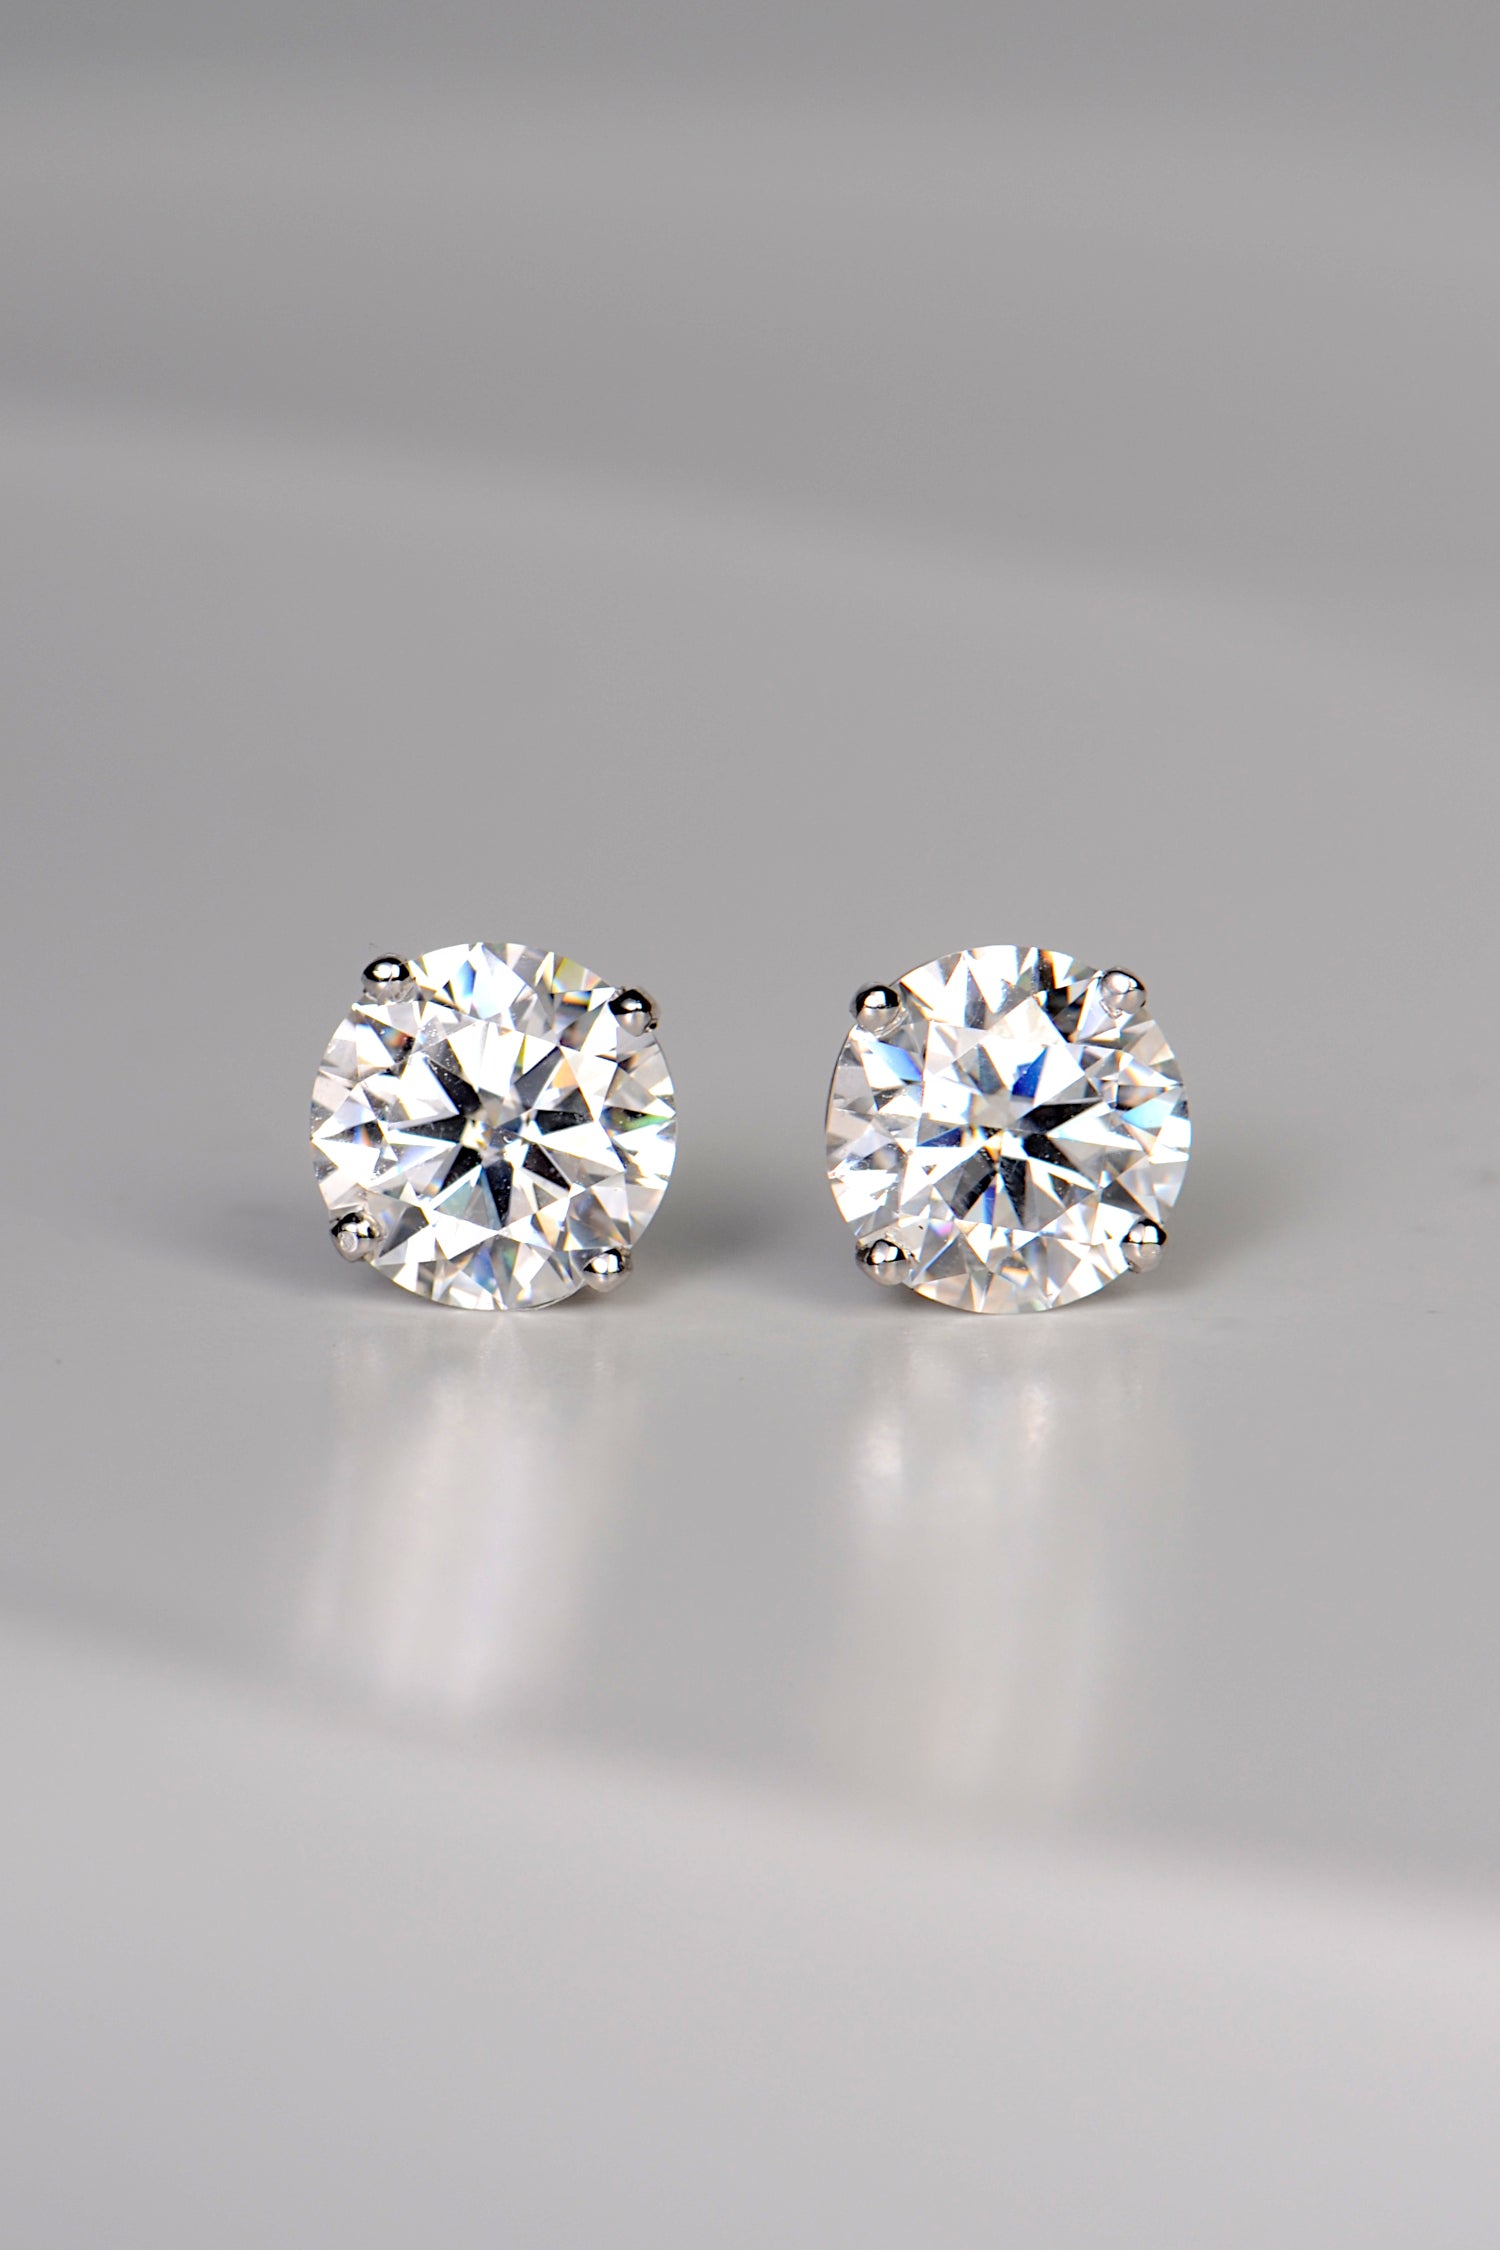 a pair of lab grown gemstone earrings